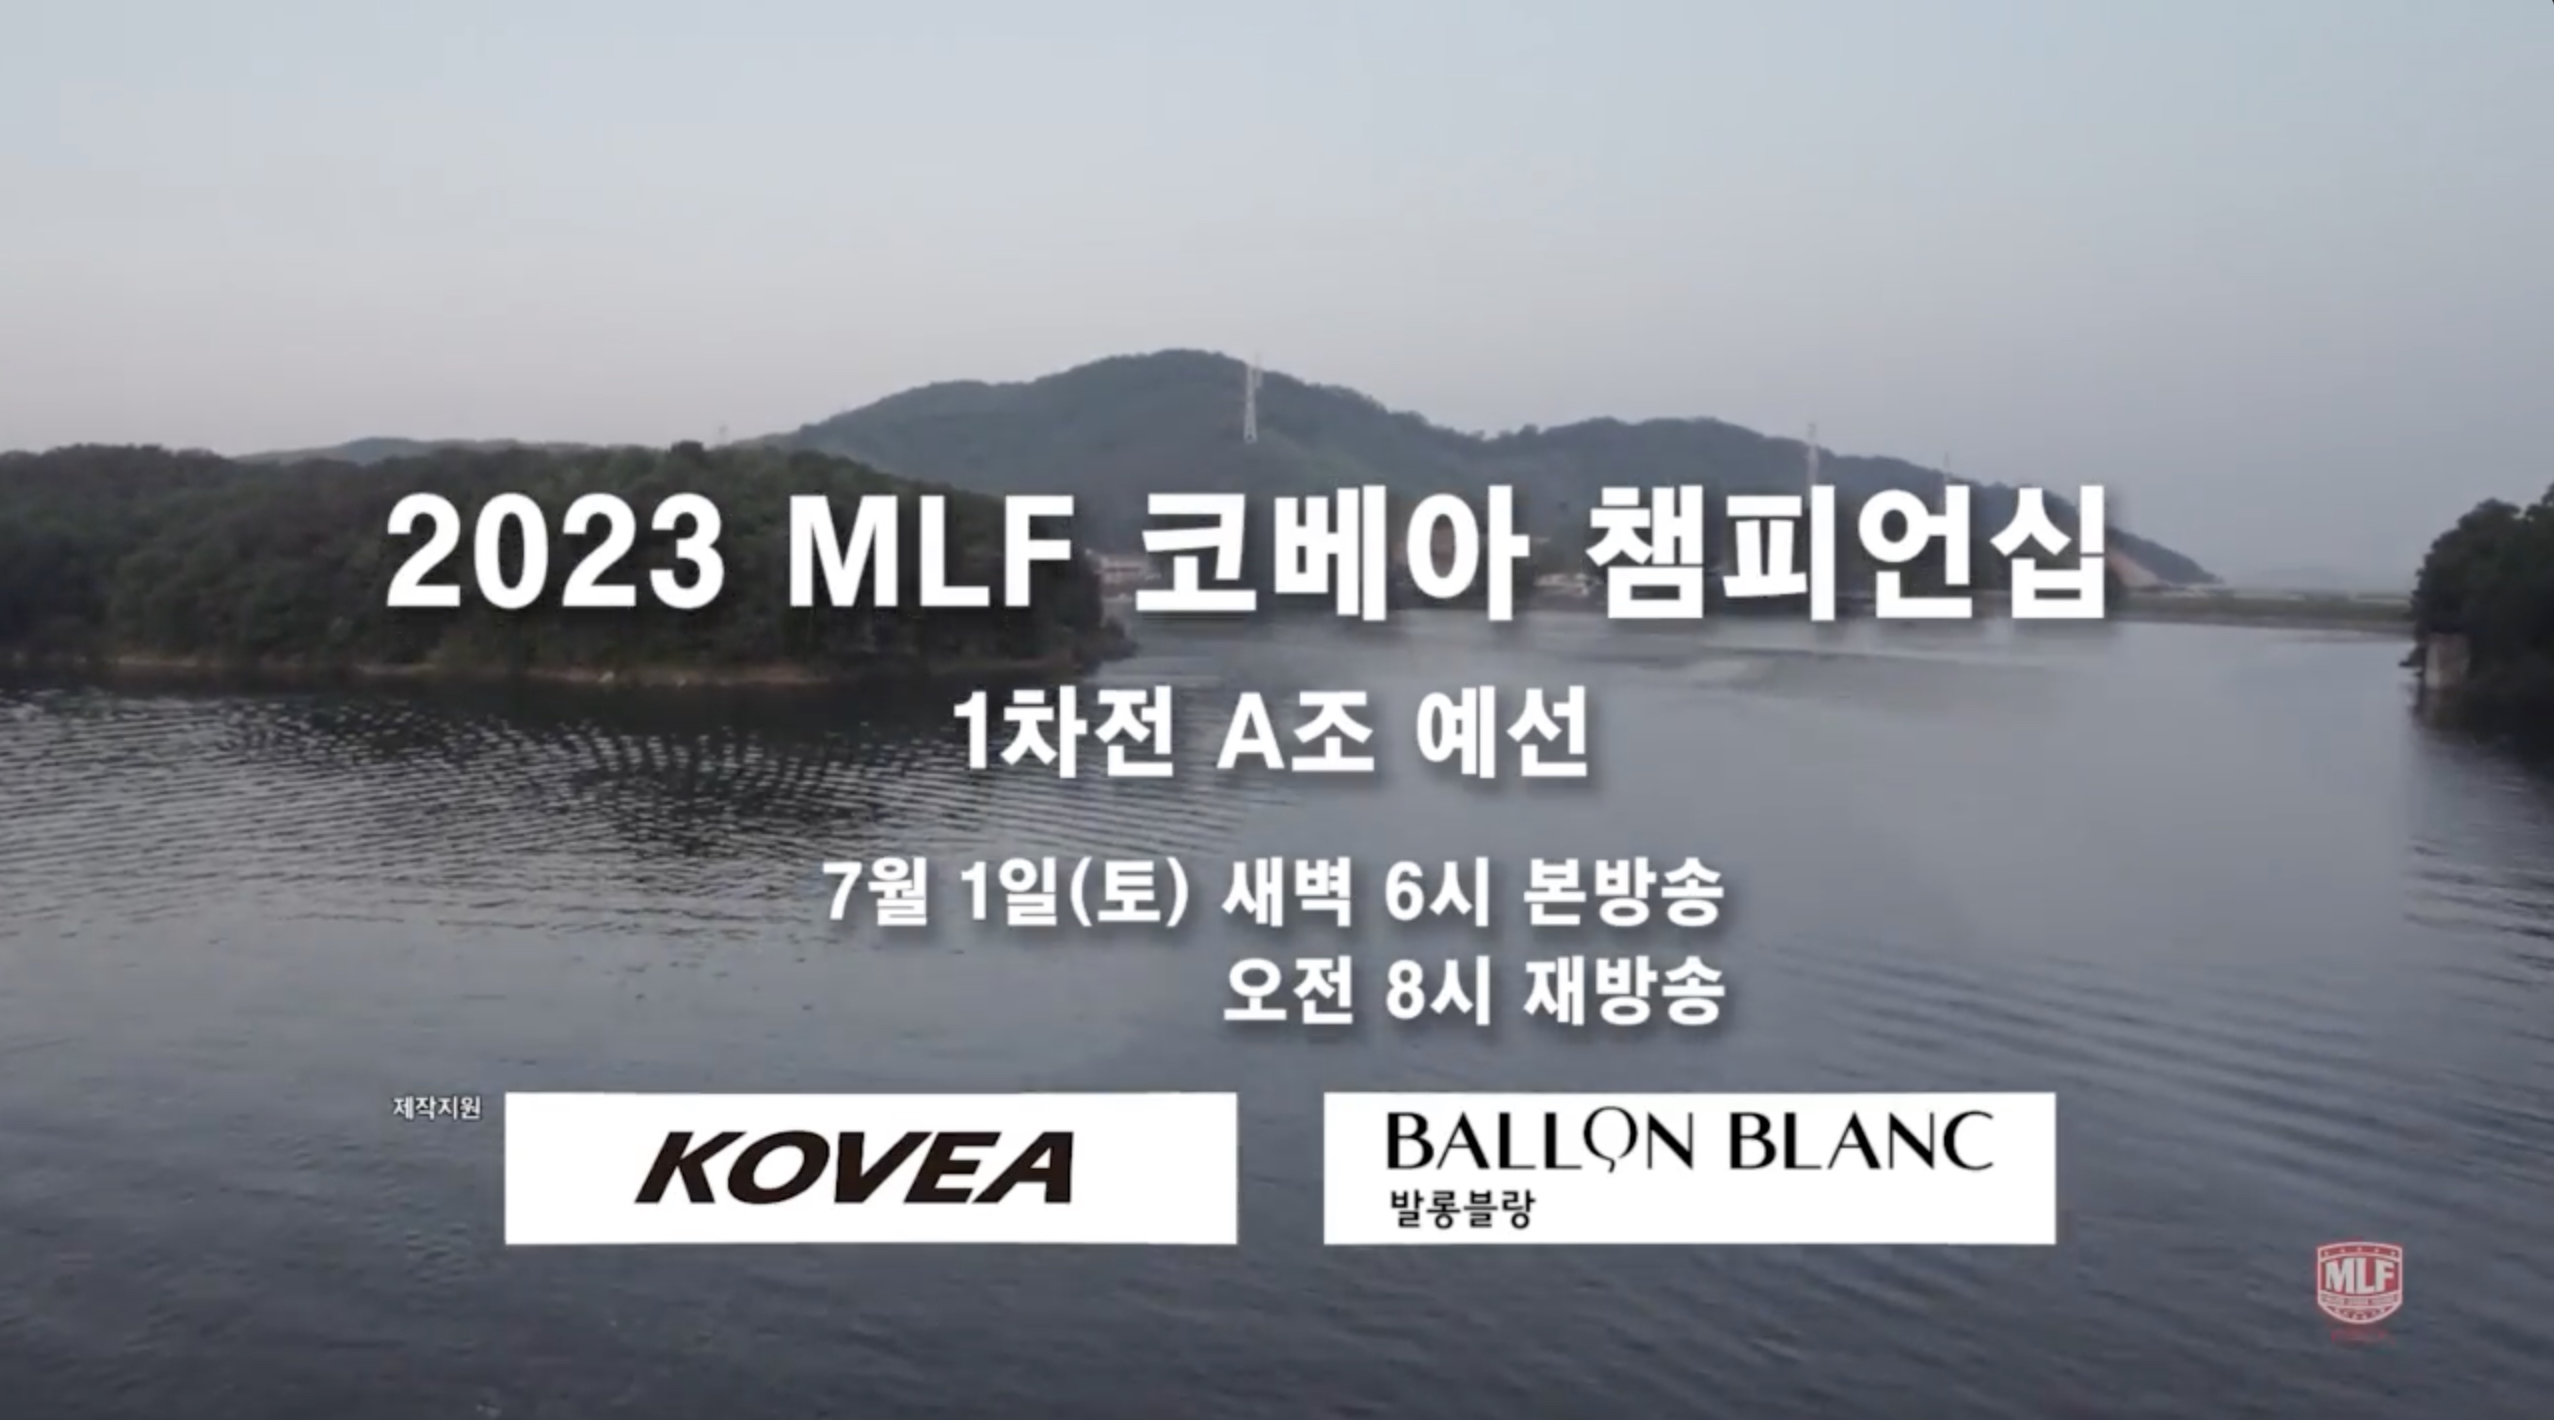 2023 MLF KOREA 코베아 챔피어십 개막전 예고..